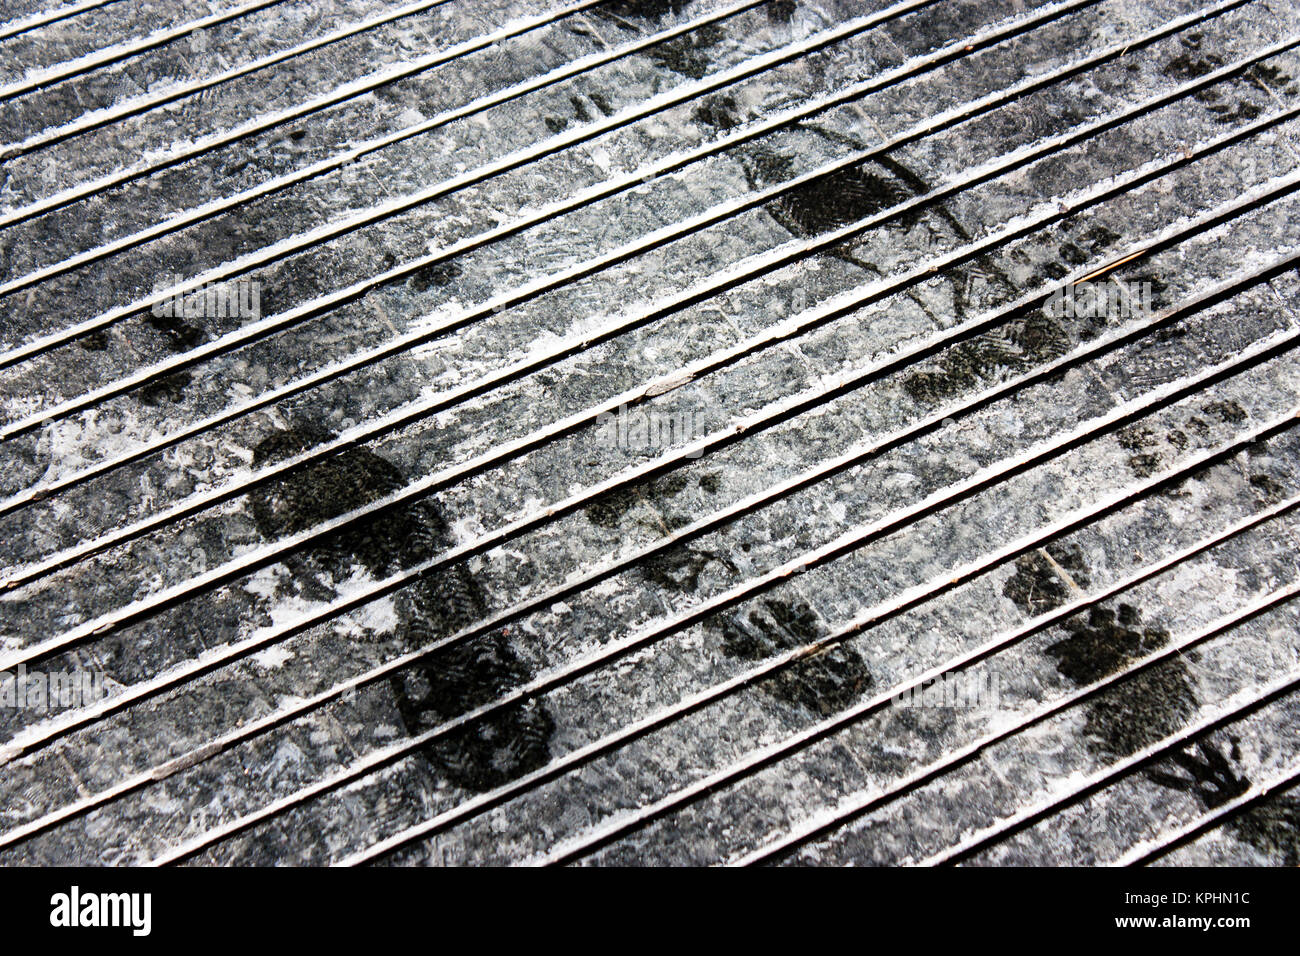 Nasse Schuh druckt auf trockenen Rutschfestes Muster bürgersteig mit Streusalz weiße Markierungen im Winter in Schwarz und Weiß Stockfoto